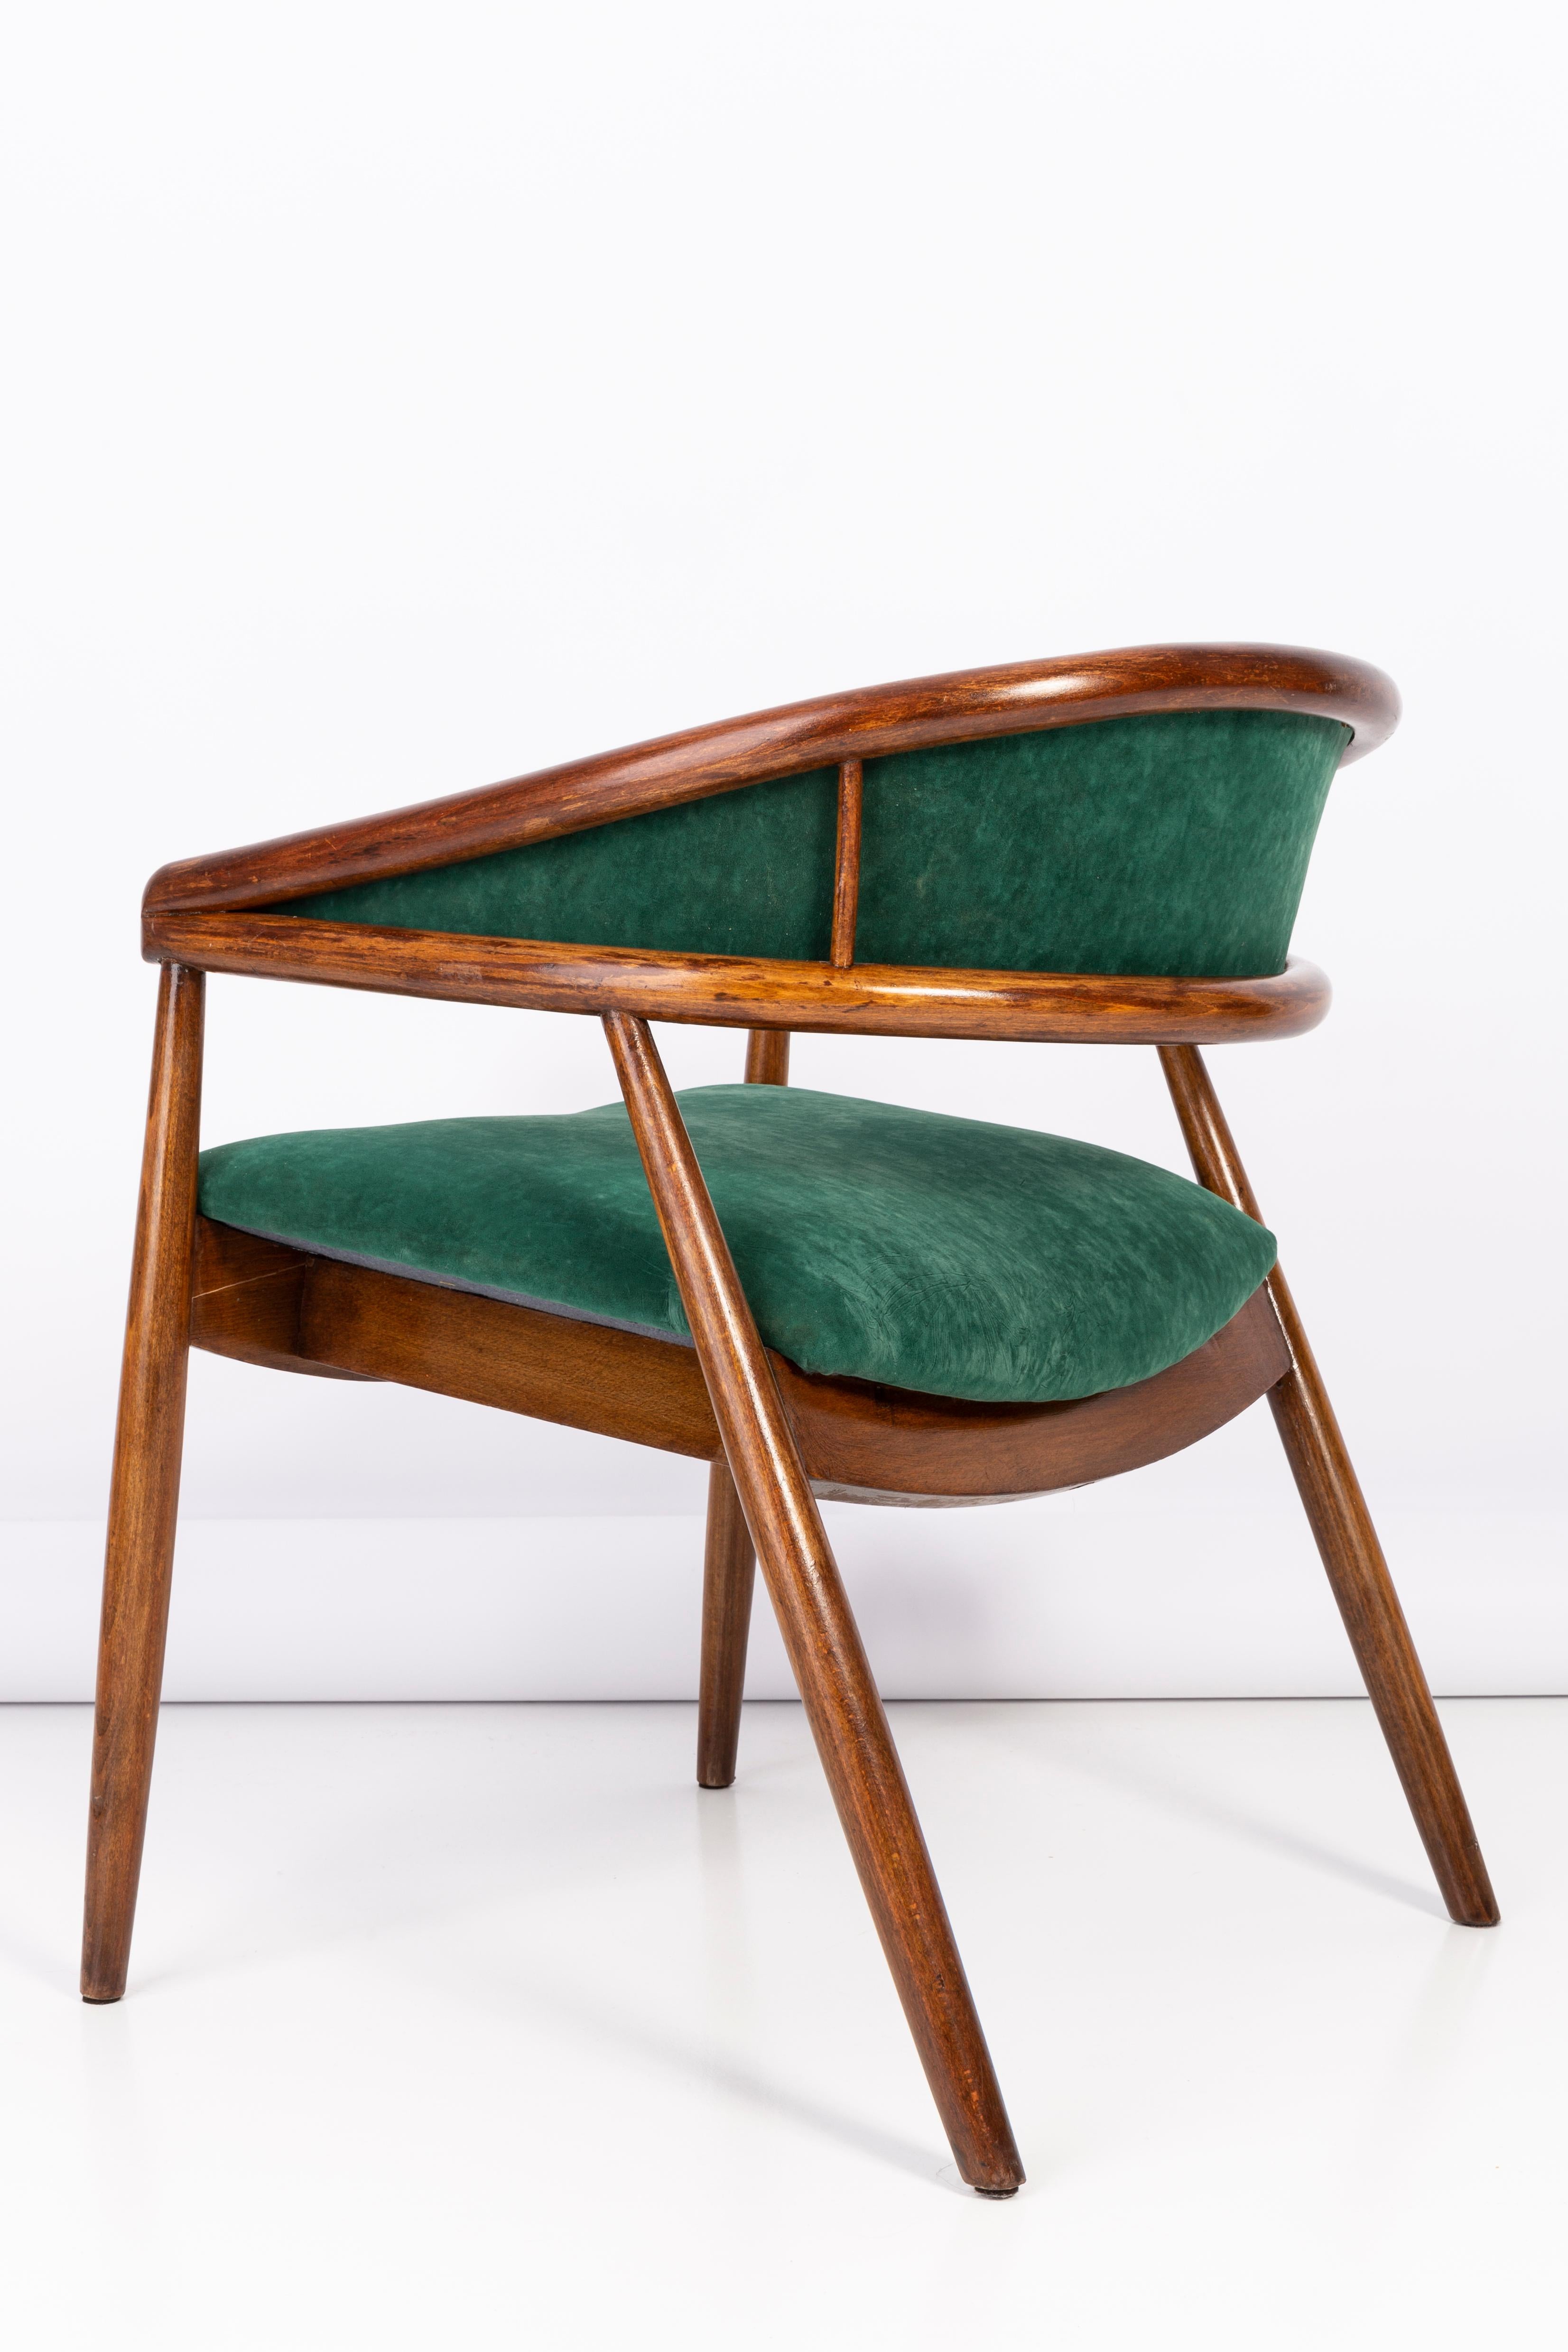 Vintage James Mont Bent Beech Armchair, Dark Green, 1960s For Sale 3